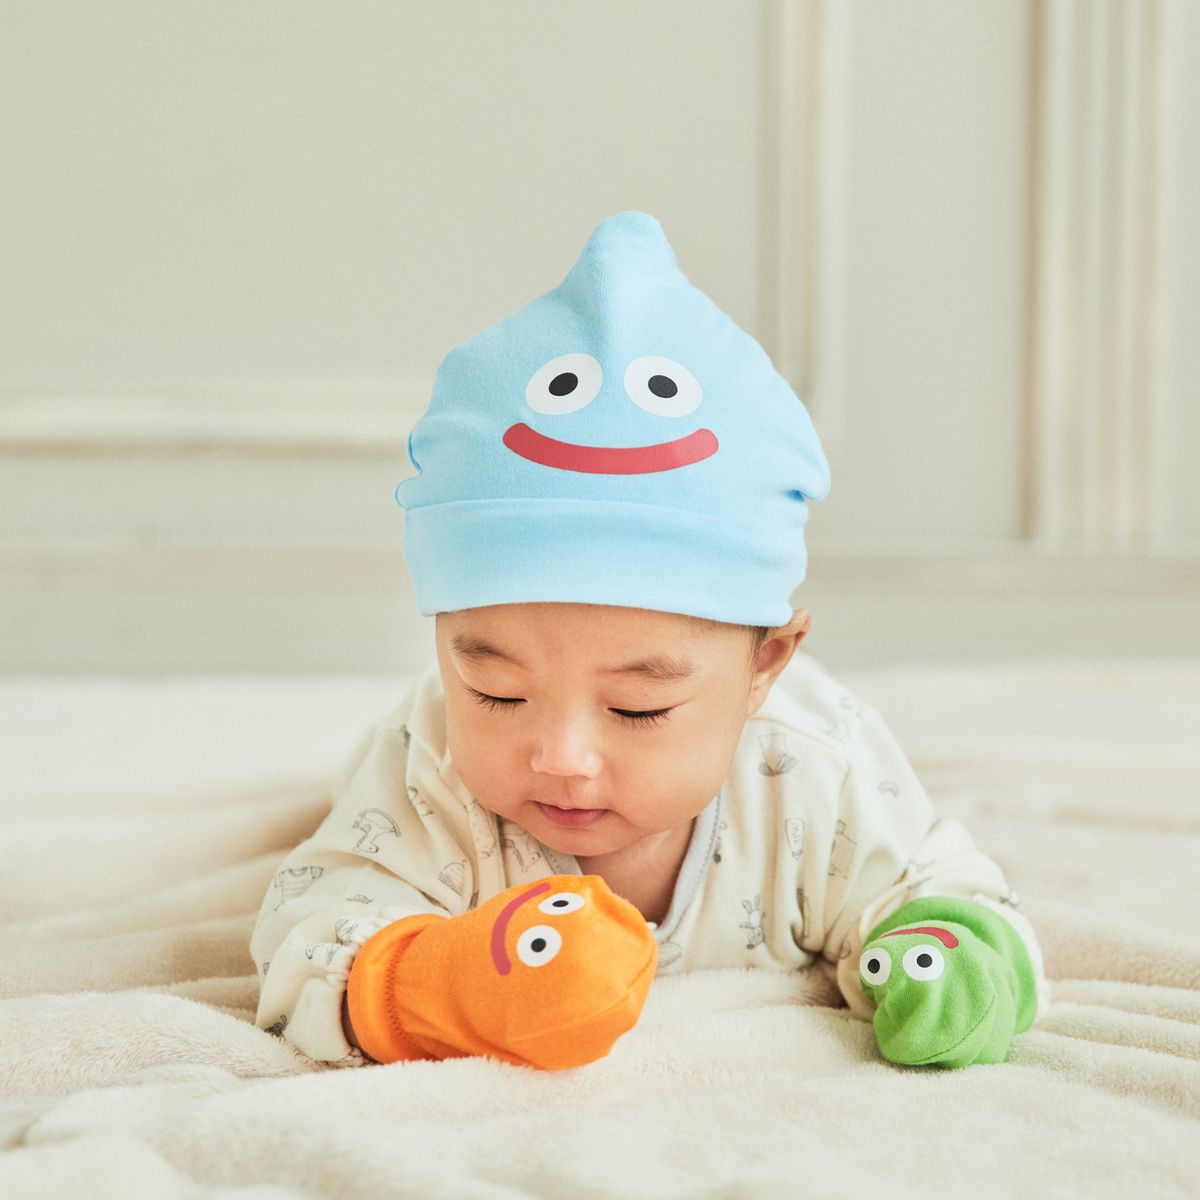 Un bébé portant des accessoires inspirés de Dragon Quest Slime, notamment un bonnet Slime et des mitaines Slime